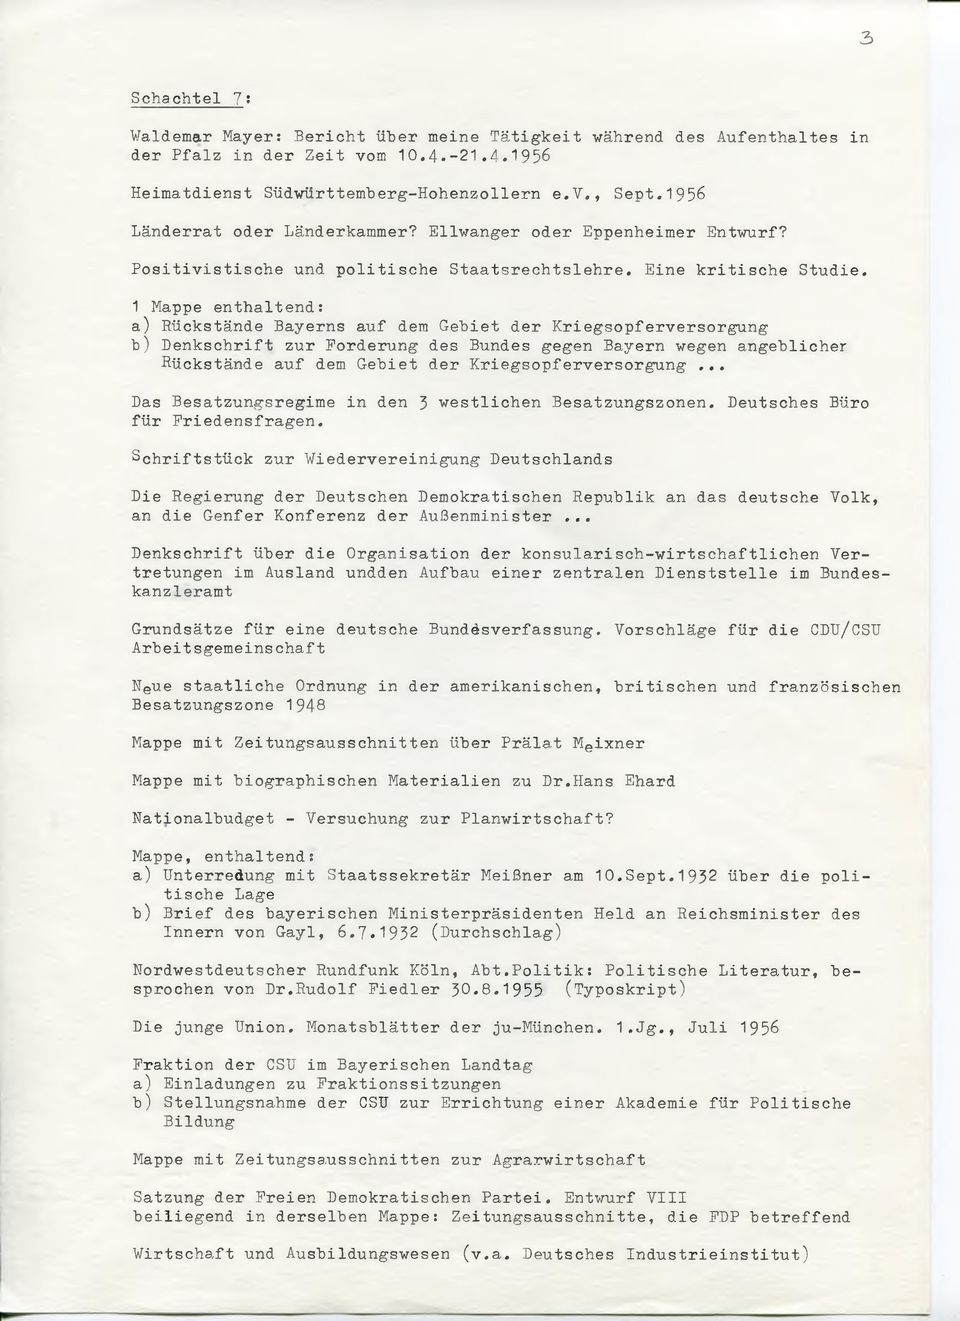 1 Mappe enthaltend: a) Rückstände Bayerns auf dem Gebiet der Kriegsopferversorgung b) Denkschrift zur Forderung des Bundes gegen Bayern wegen angeblicher Rückstände auf dem Gebiet der